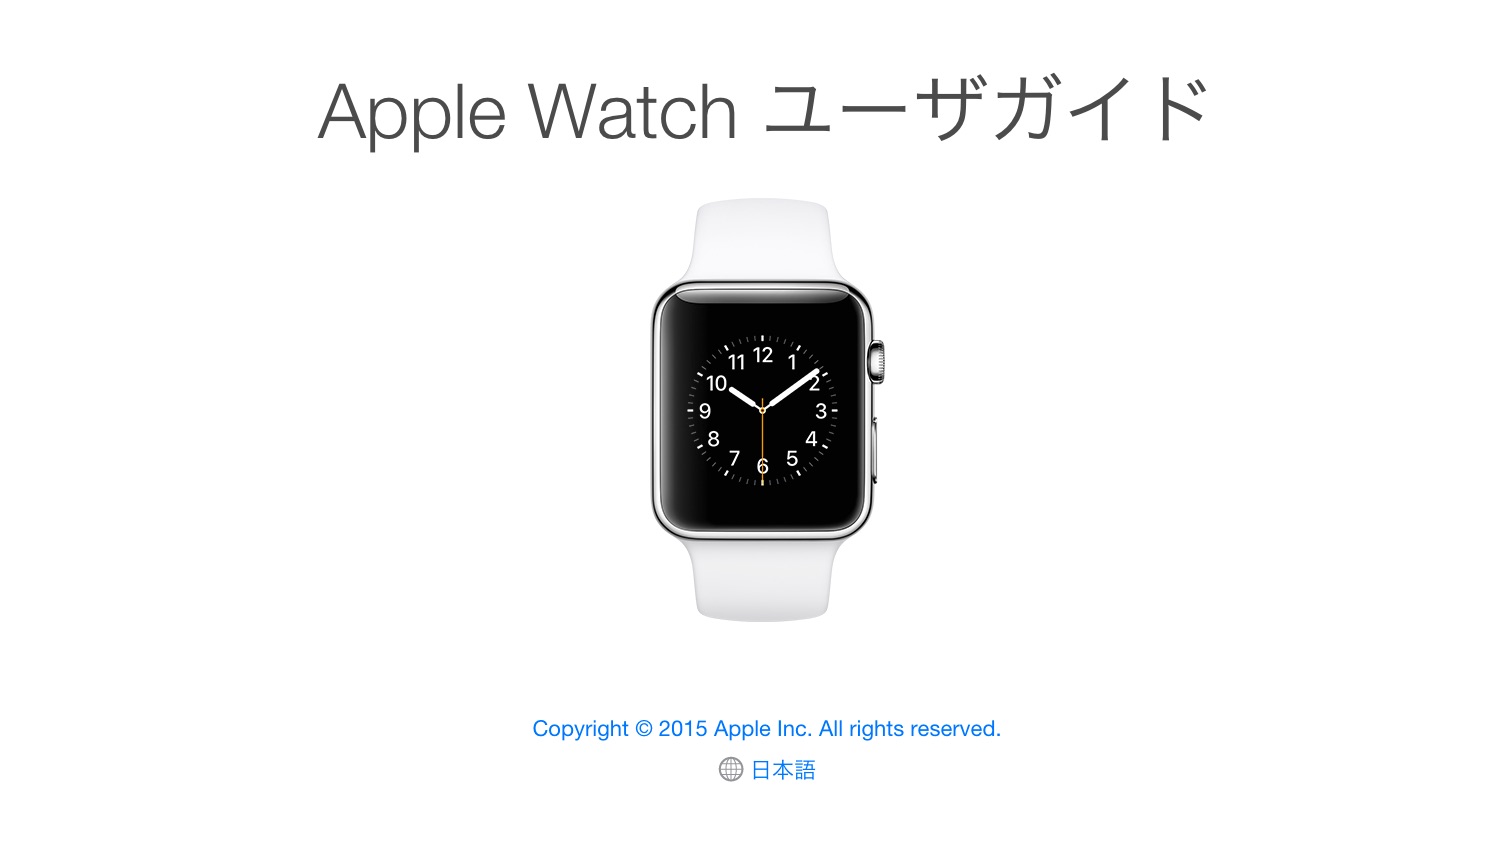 Apple Watchの使い方がわかる説明書「ユーザーガイド」が公開